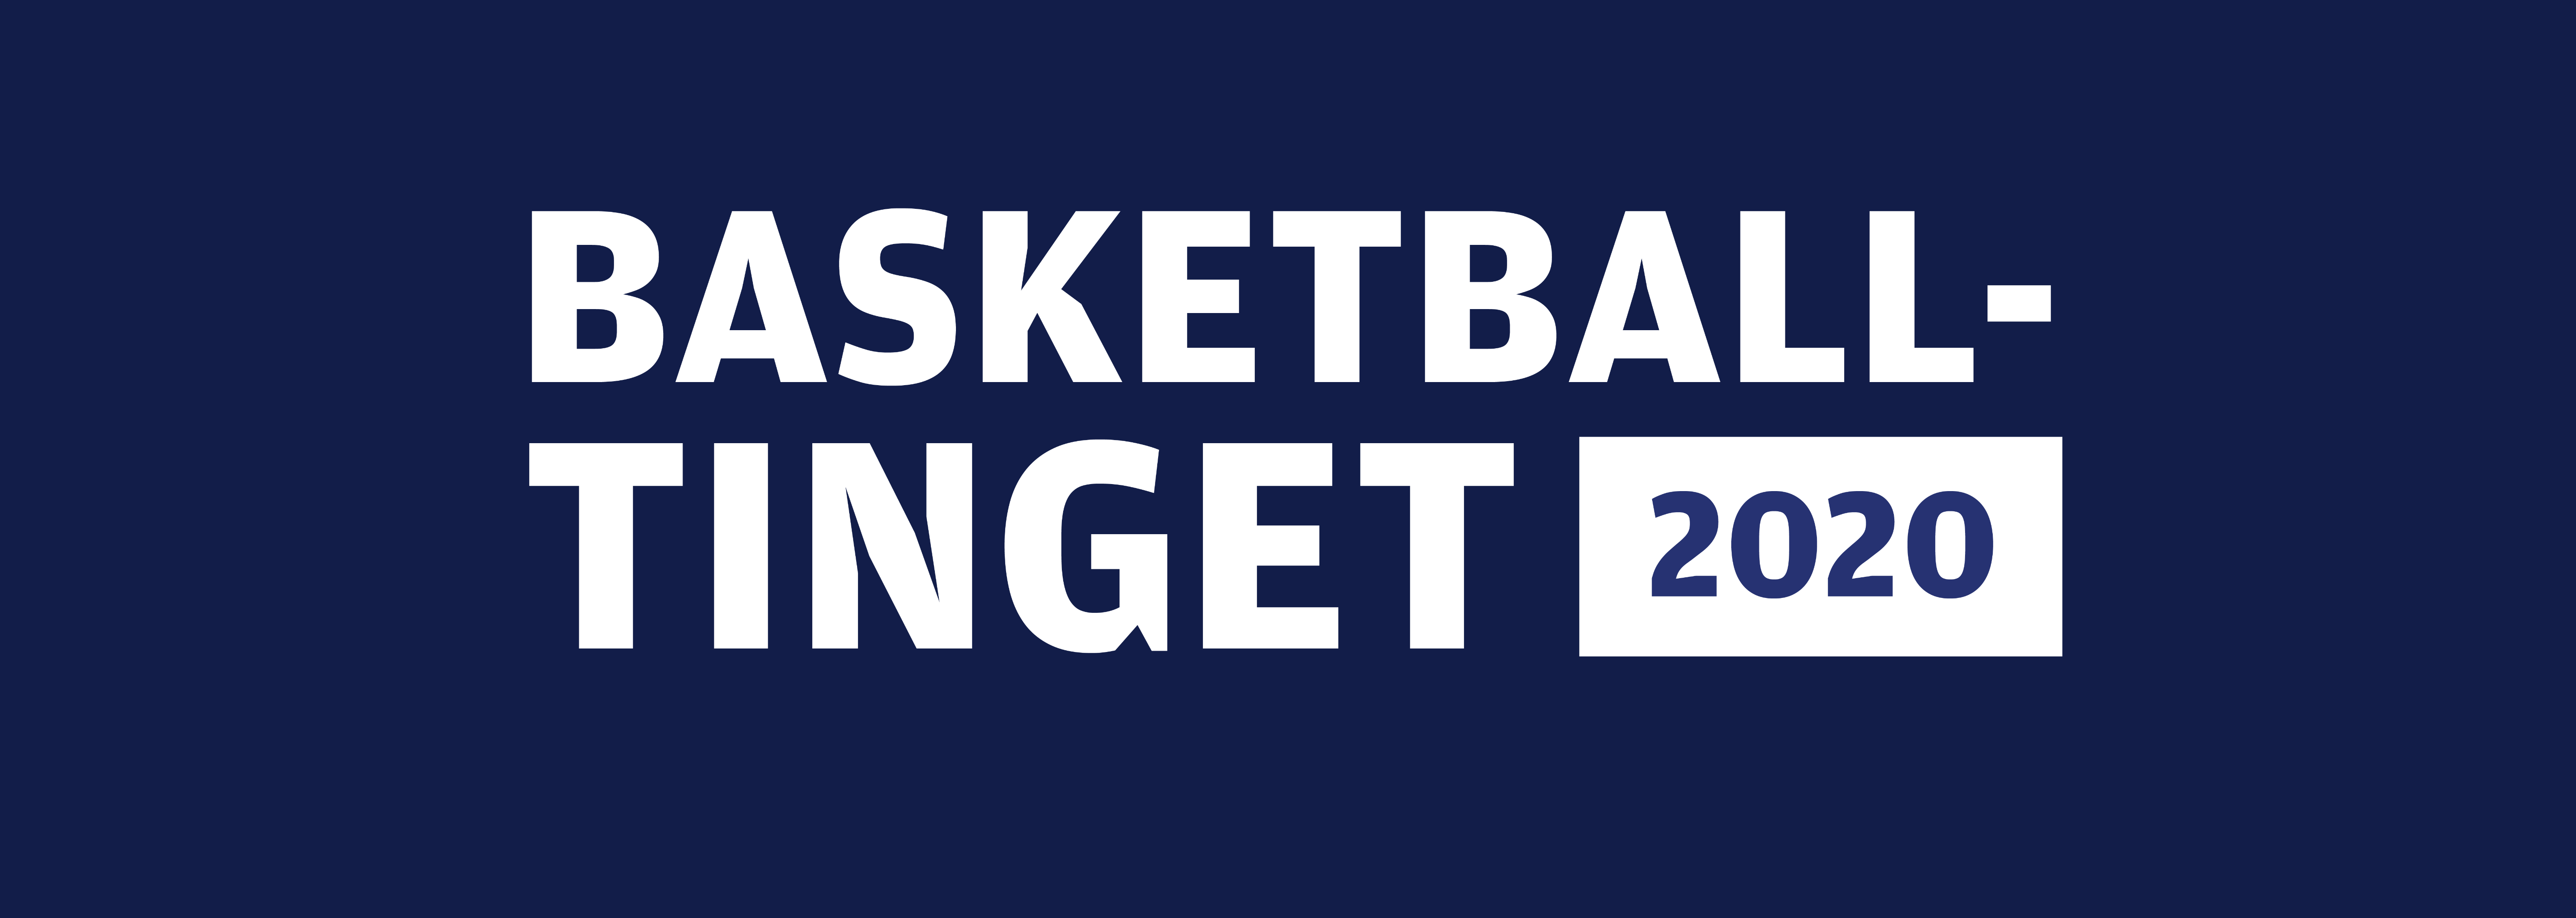 Basketballtinget 2020 tilpasset.png